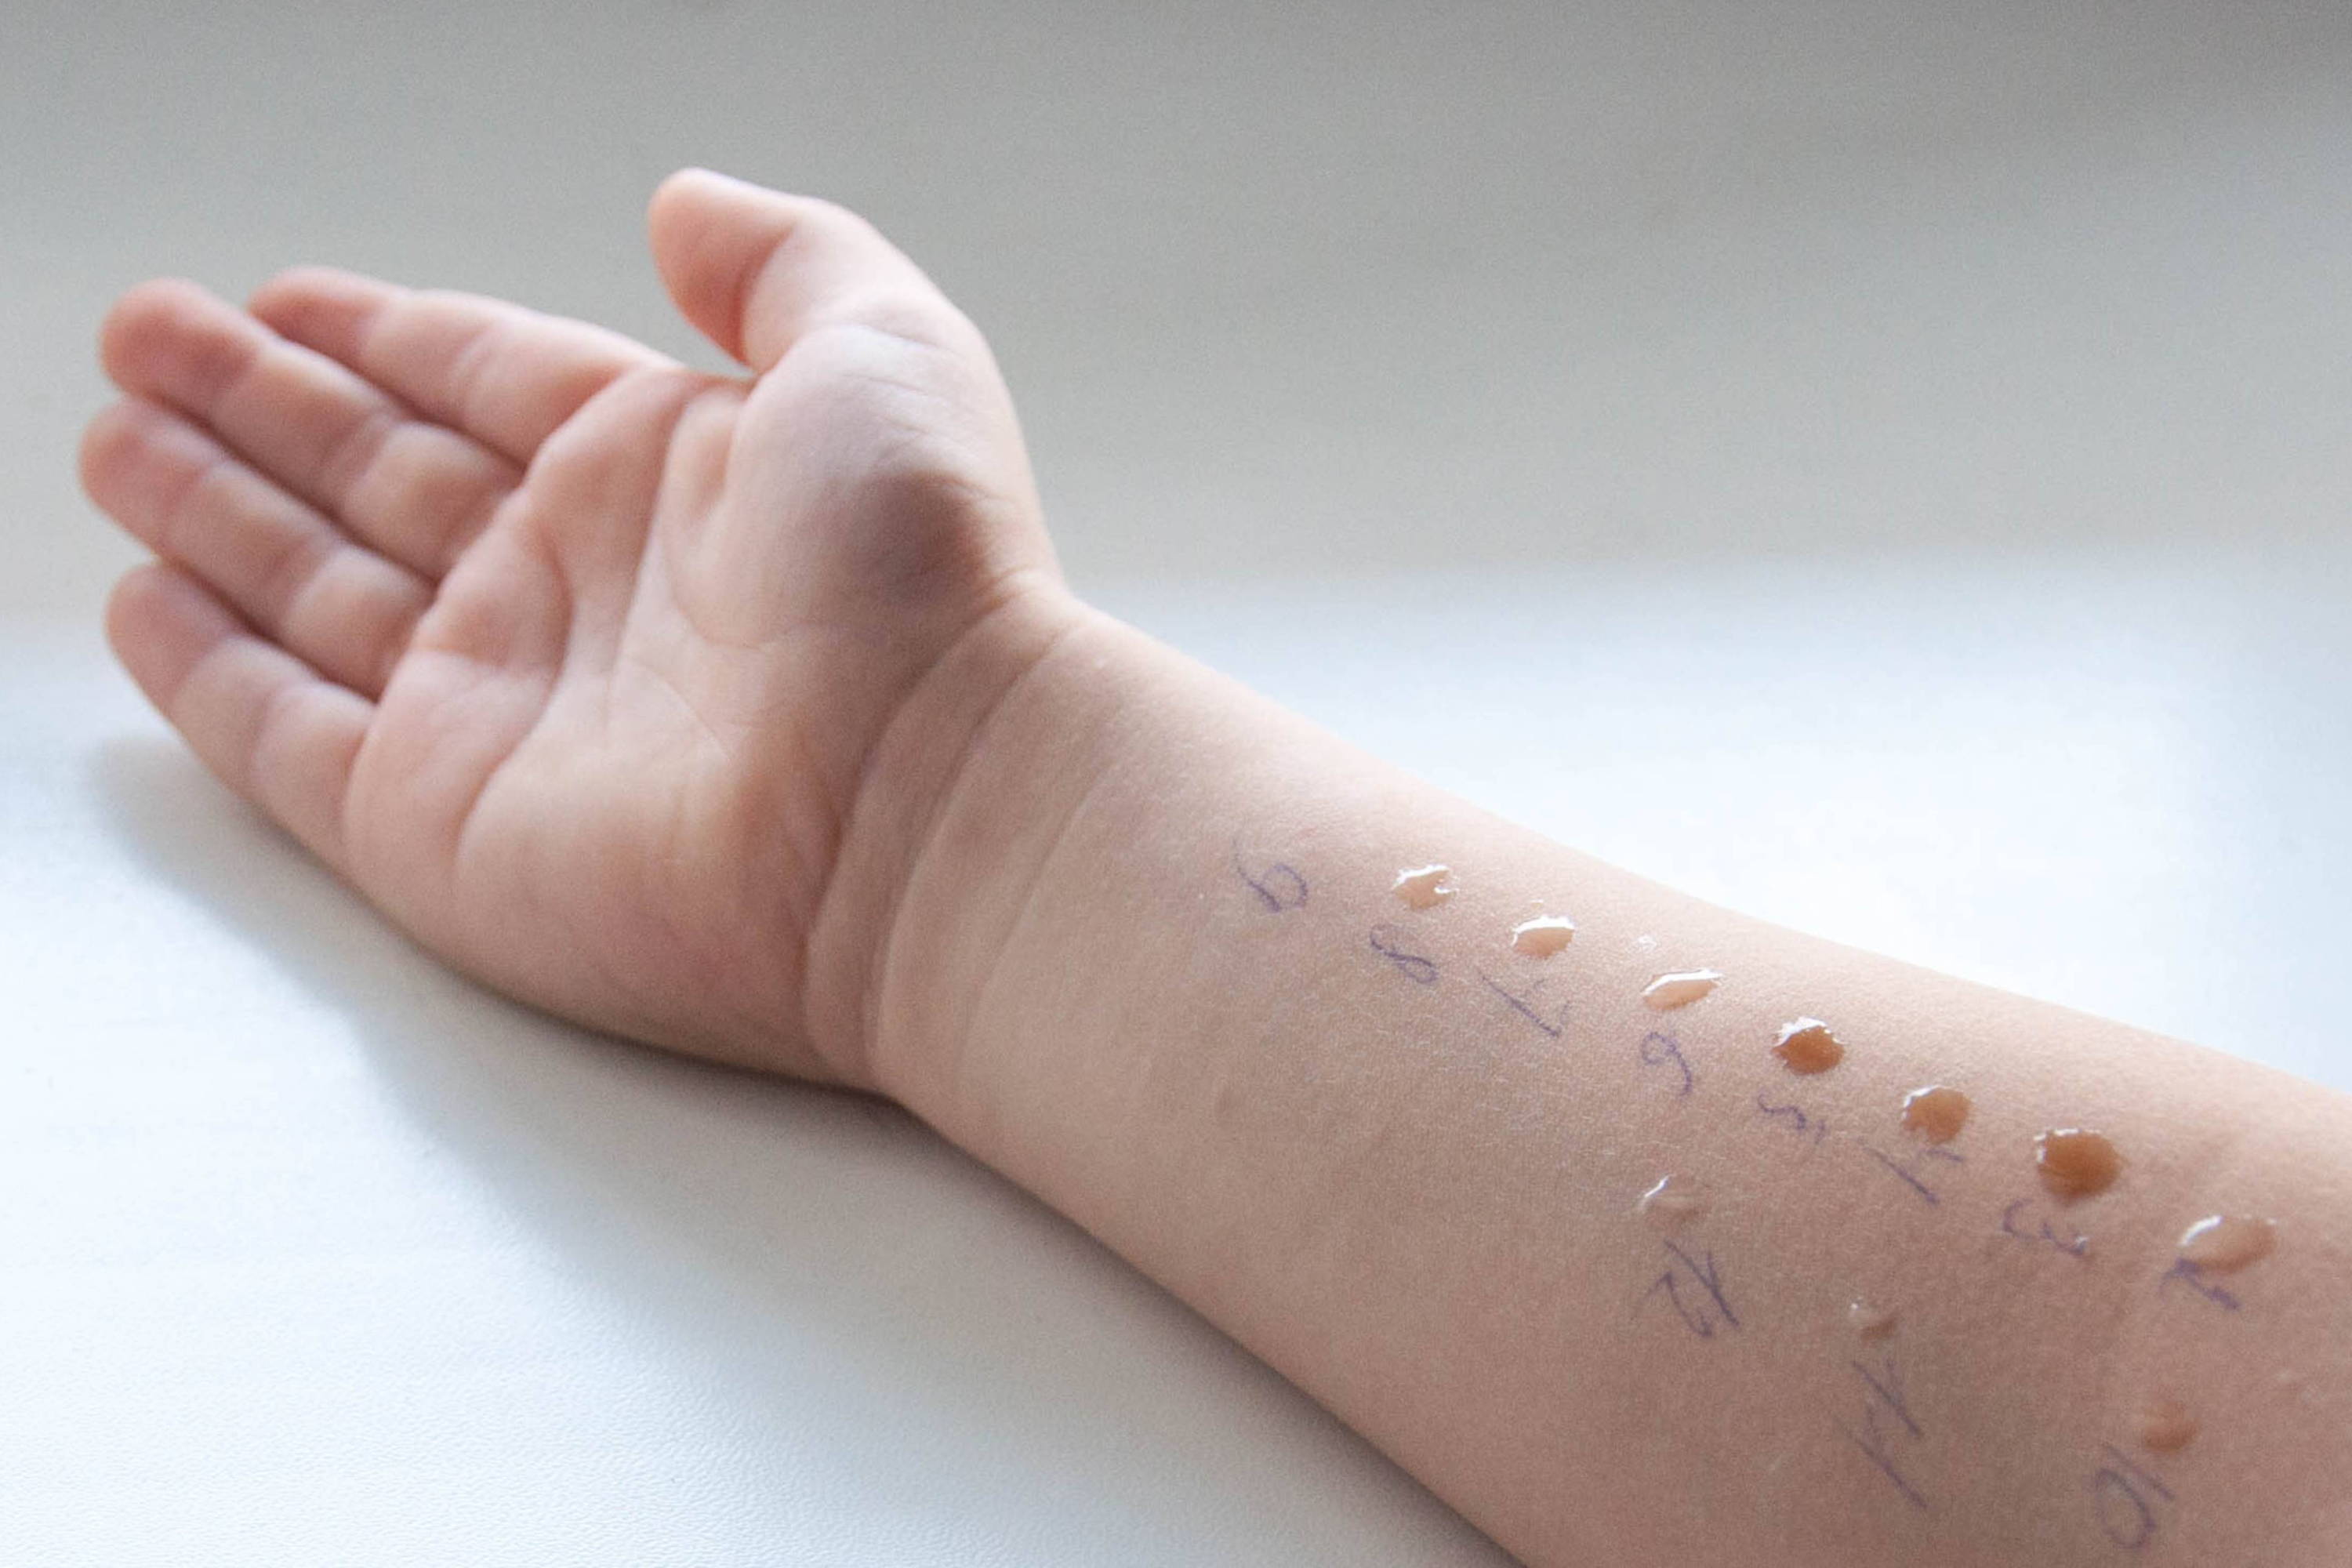 Detská ruka počas kožného prick testu - kvapky tekutiny obsahujúce malé množstvo alergénov môžu spôsobiť reakciu podobnú štípancu od komára